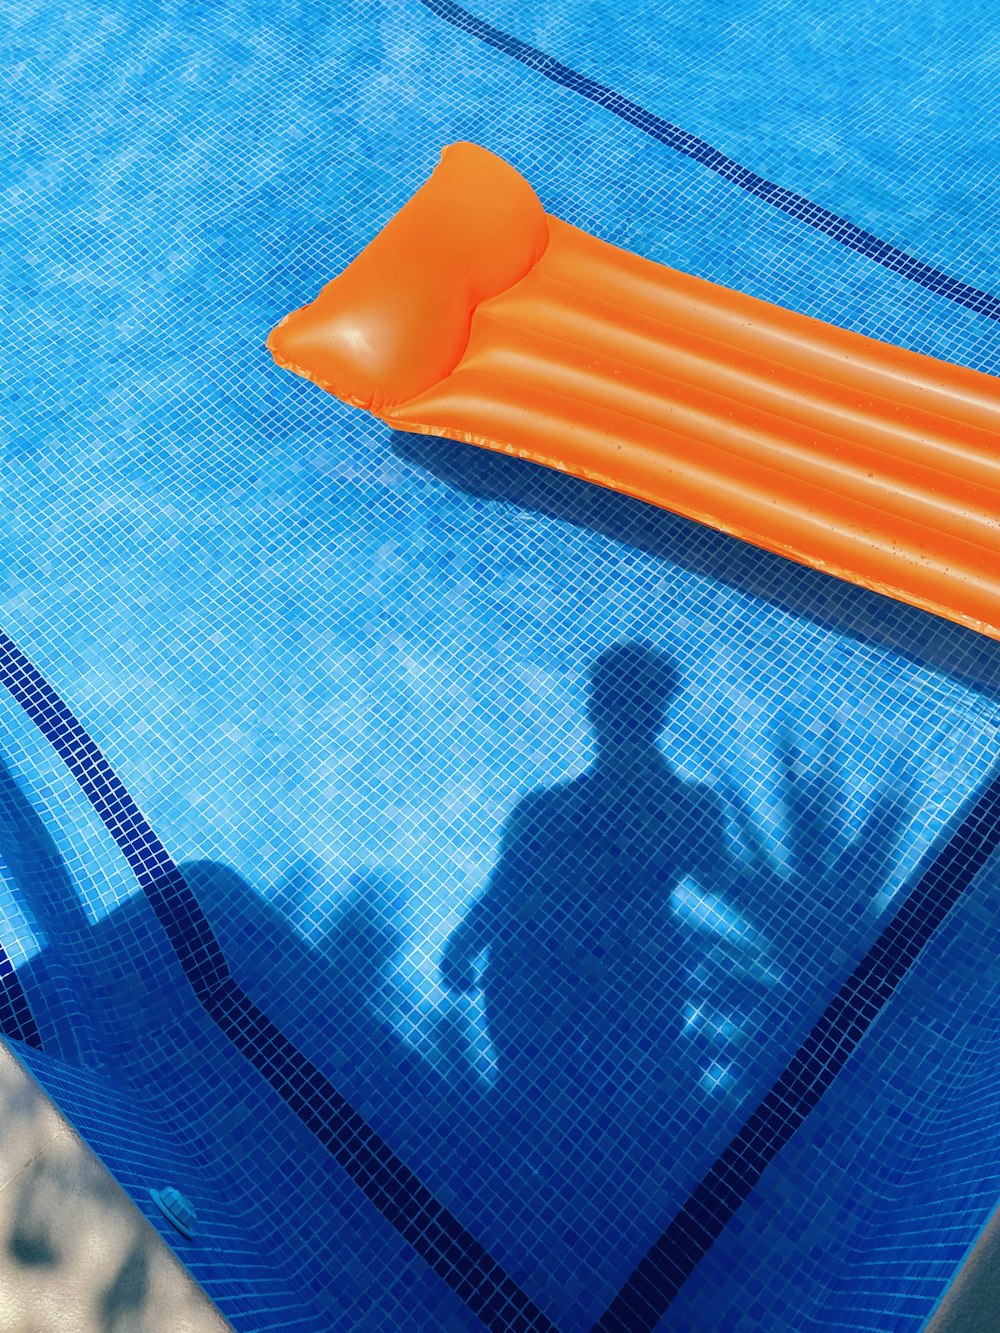 orange plastic tool on blue textile